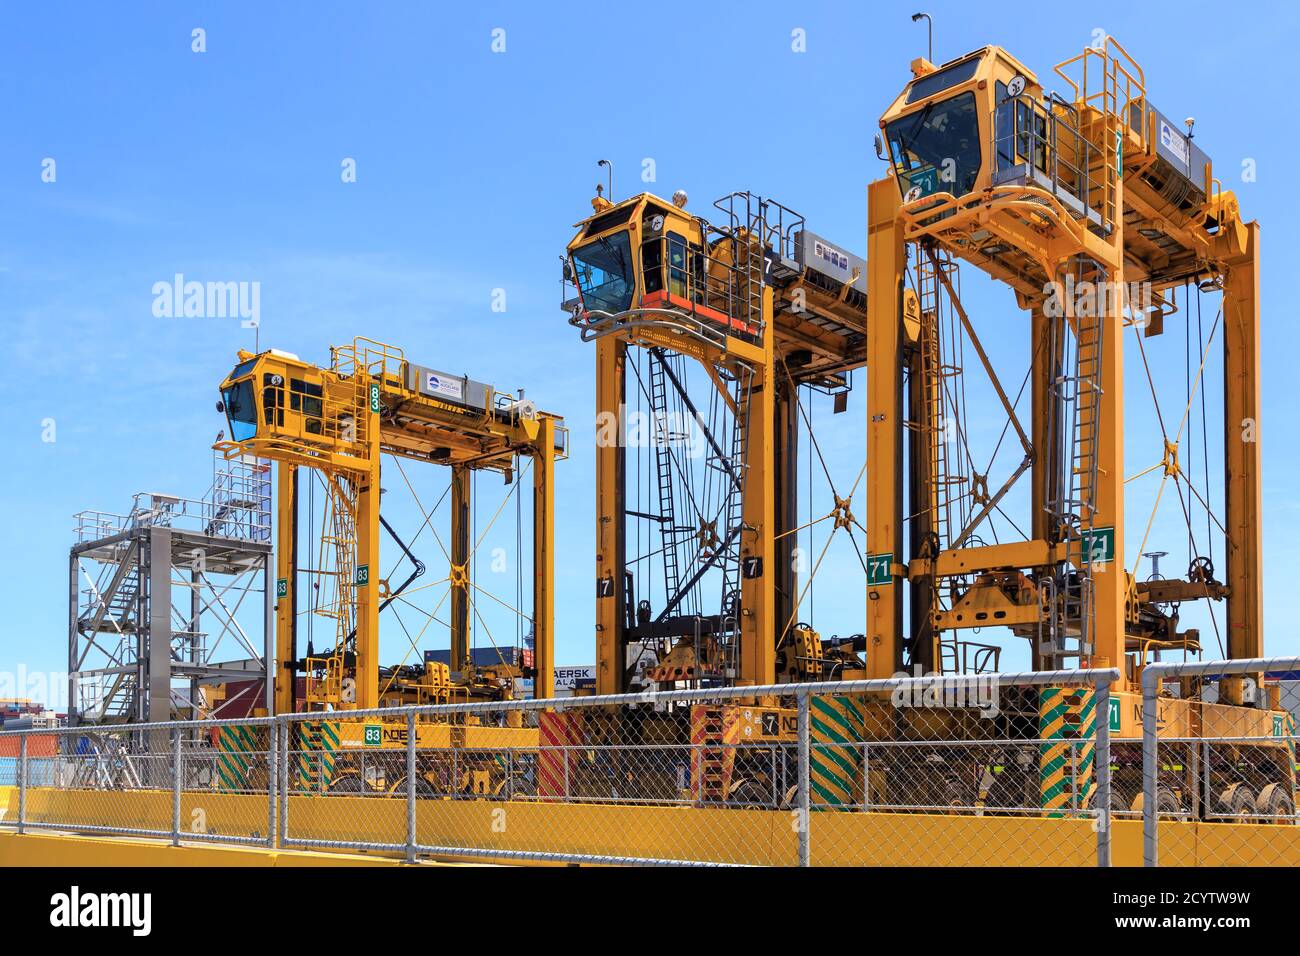 Eine Reihe von riesigen Straddle Carrier, Fahrzeuge entwickelt, um Transportcontainer zu bewegen. Fotografiert im Hafen von Auckland, Neuseeland, Januar 25 2020 Stockfoto